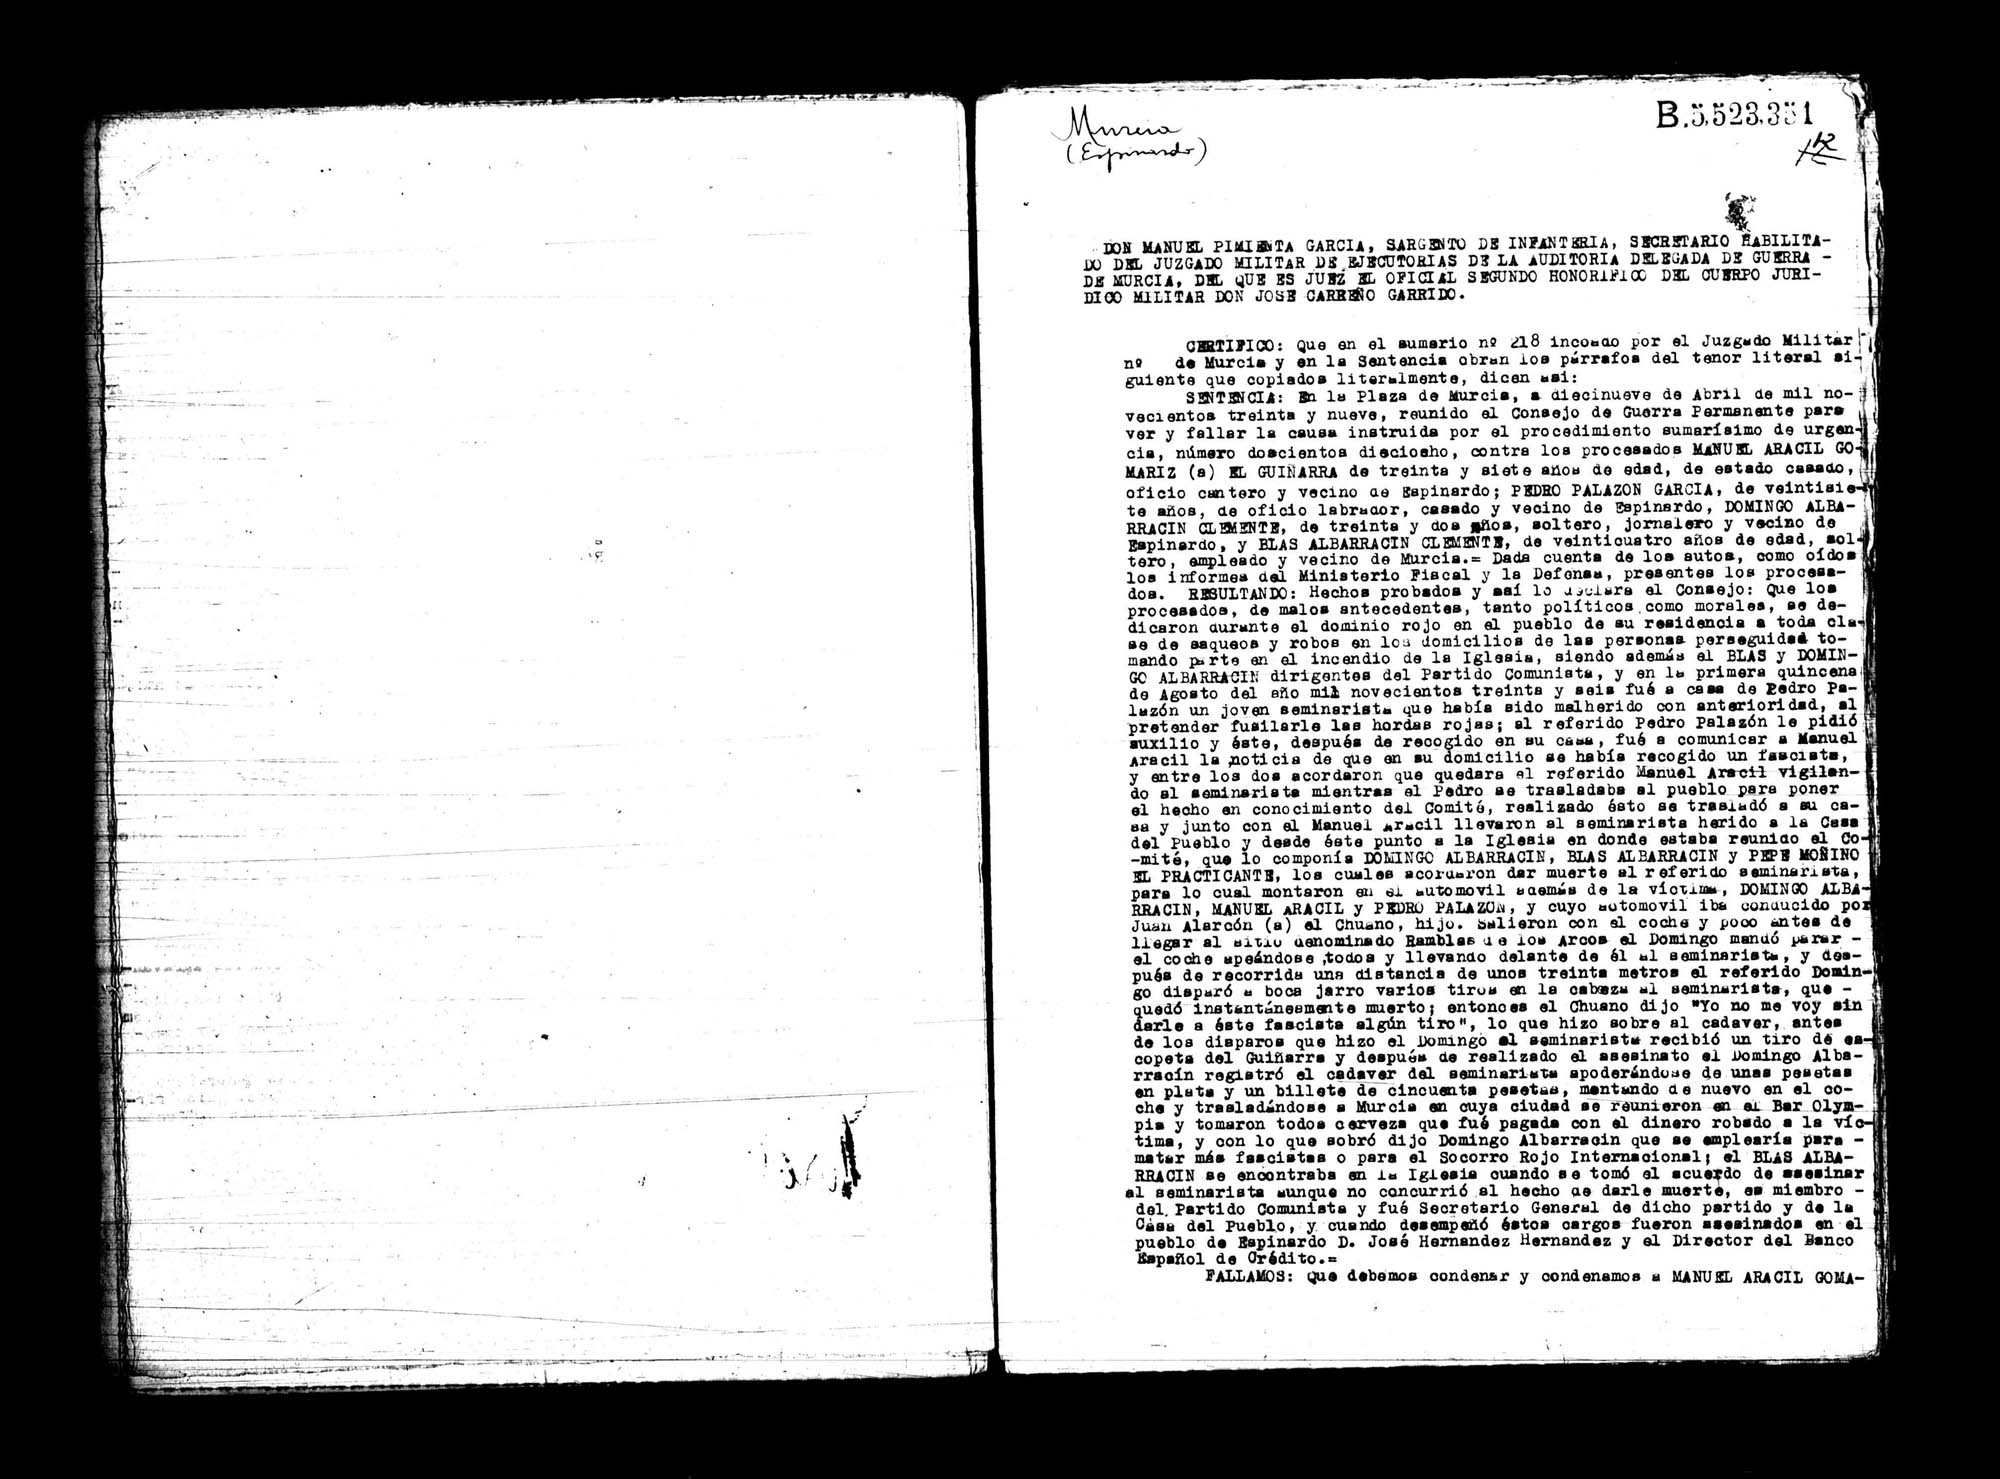 Certificado de la sentencia pronunciada contra Manuel Aracil Gomariz, Pedro Palazón García, Domingo Albarracín Clemente y Blas Albarracín Clemente, causa  218, el 19 de abril de 1939 en Murcia.